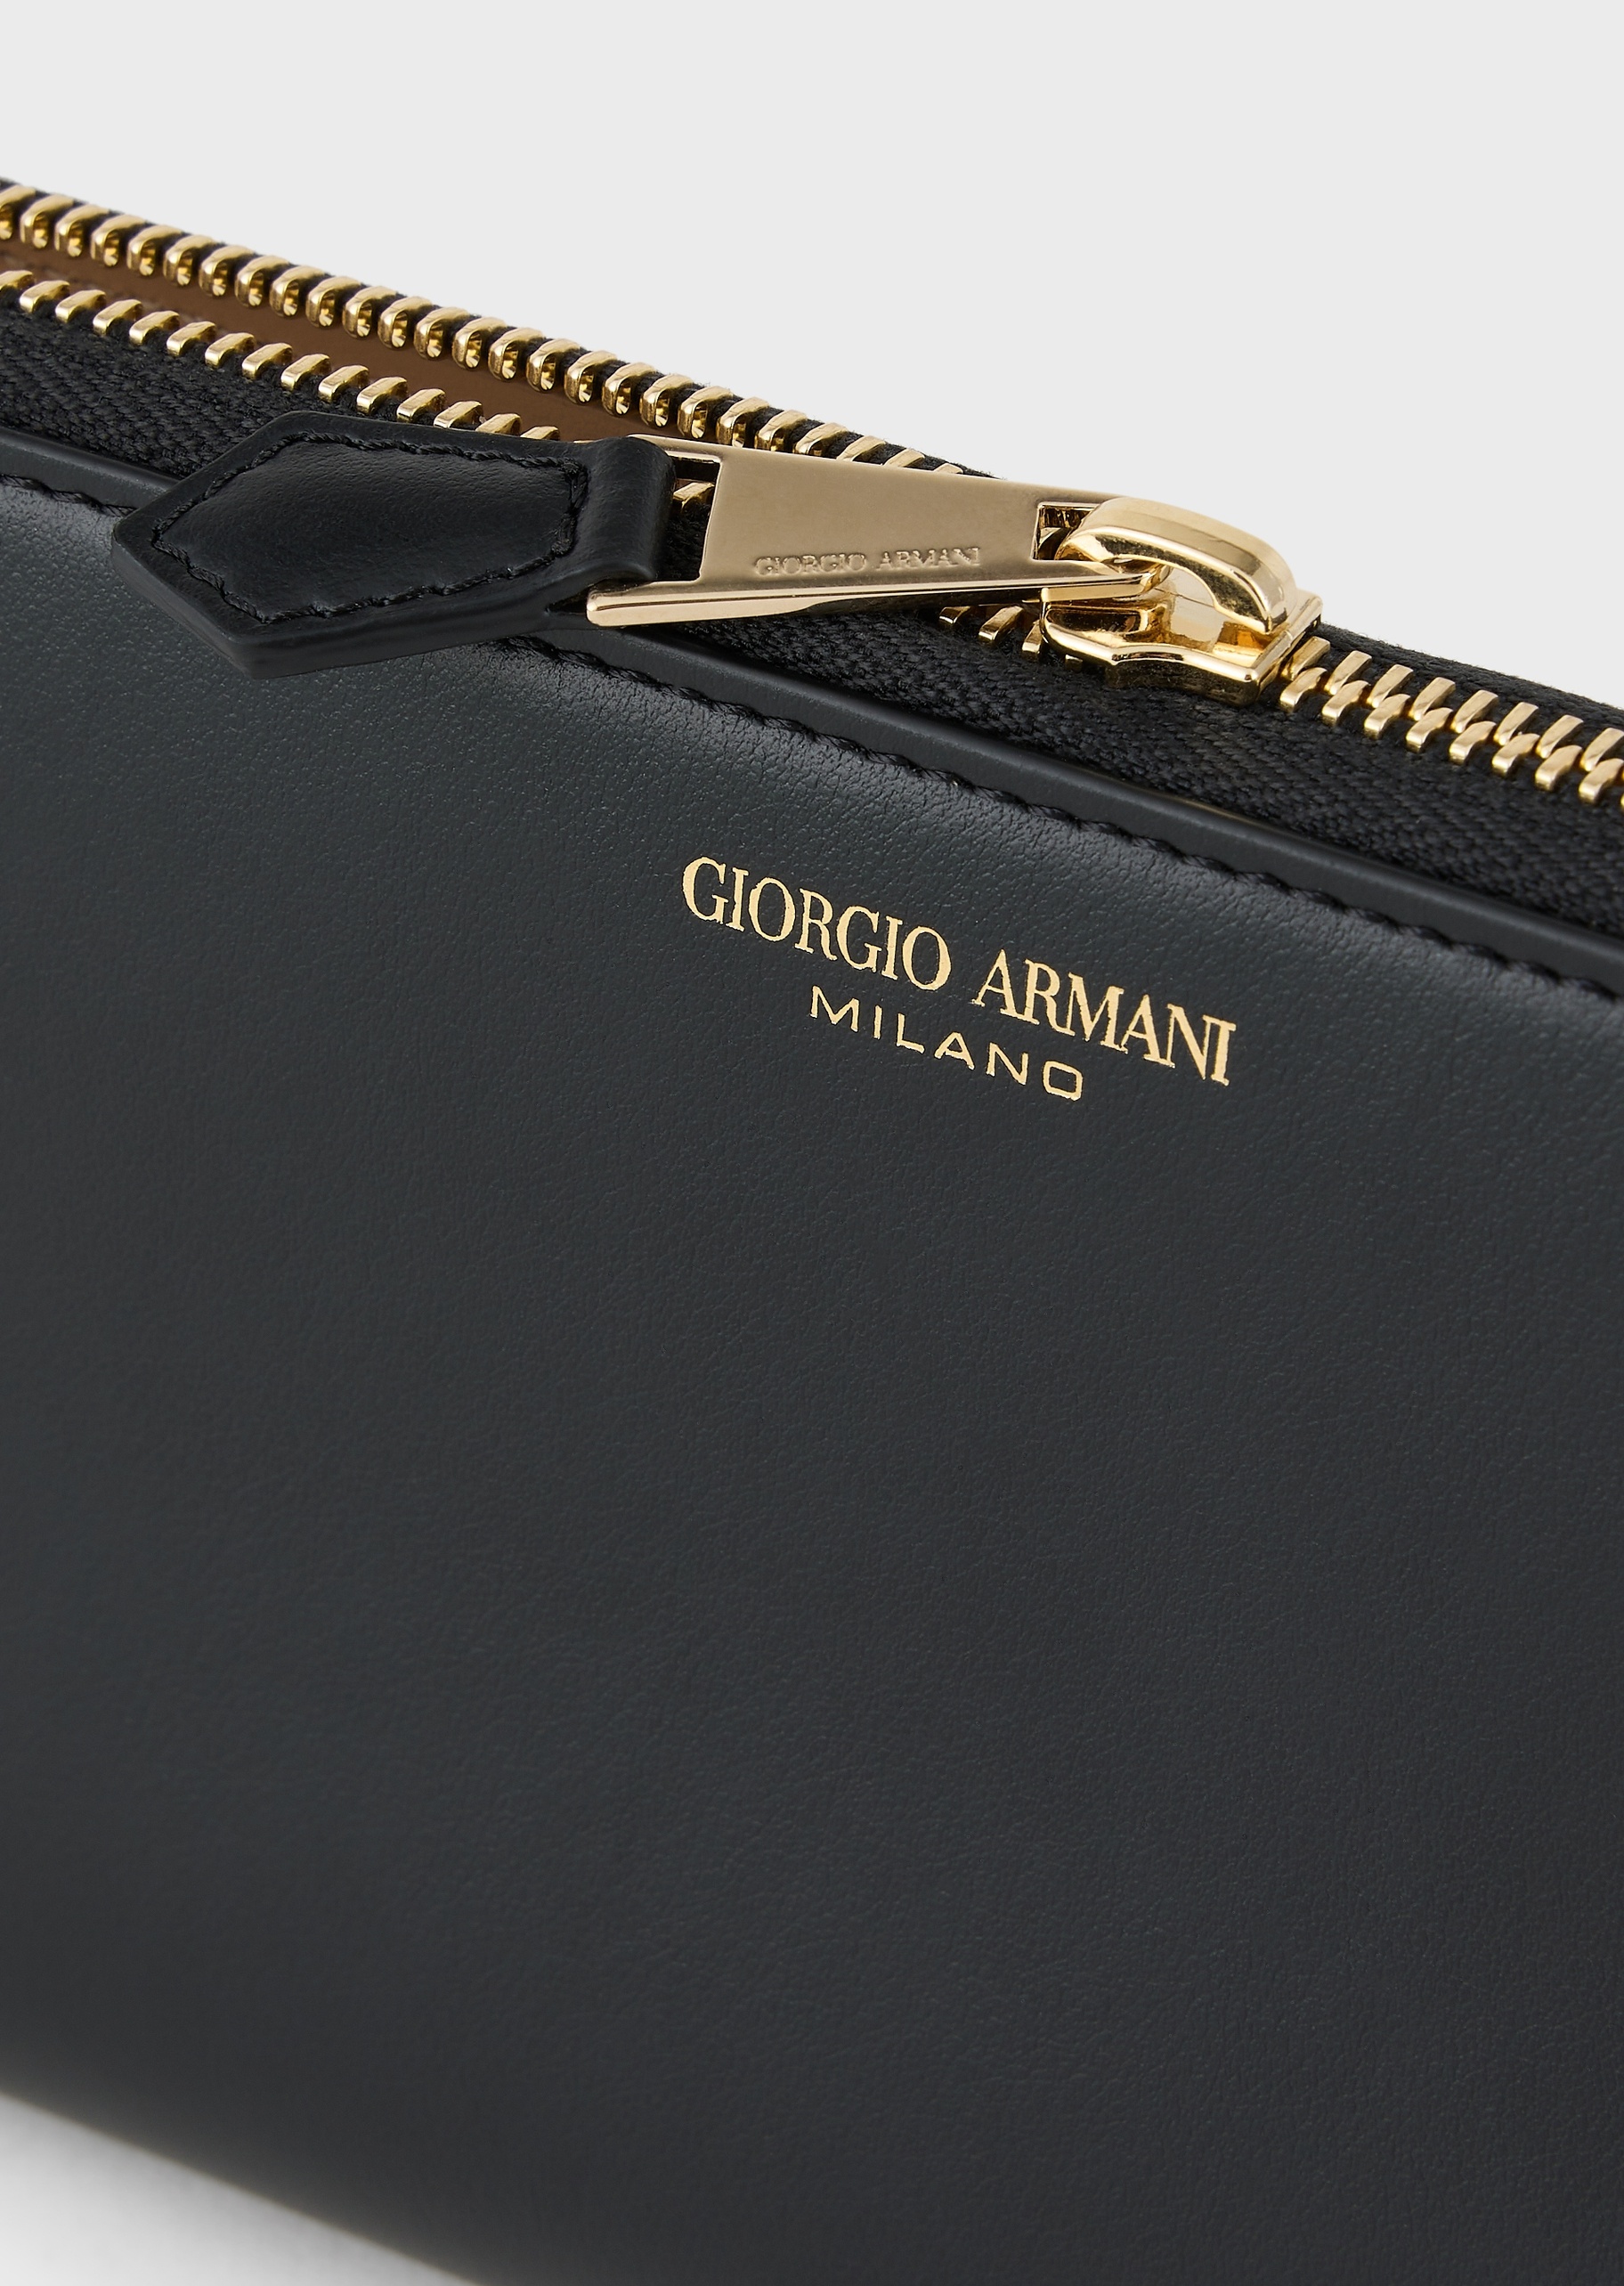 Giorgio Armani La Prima女士牛皮革长款手拿钱包